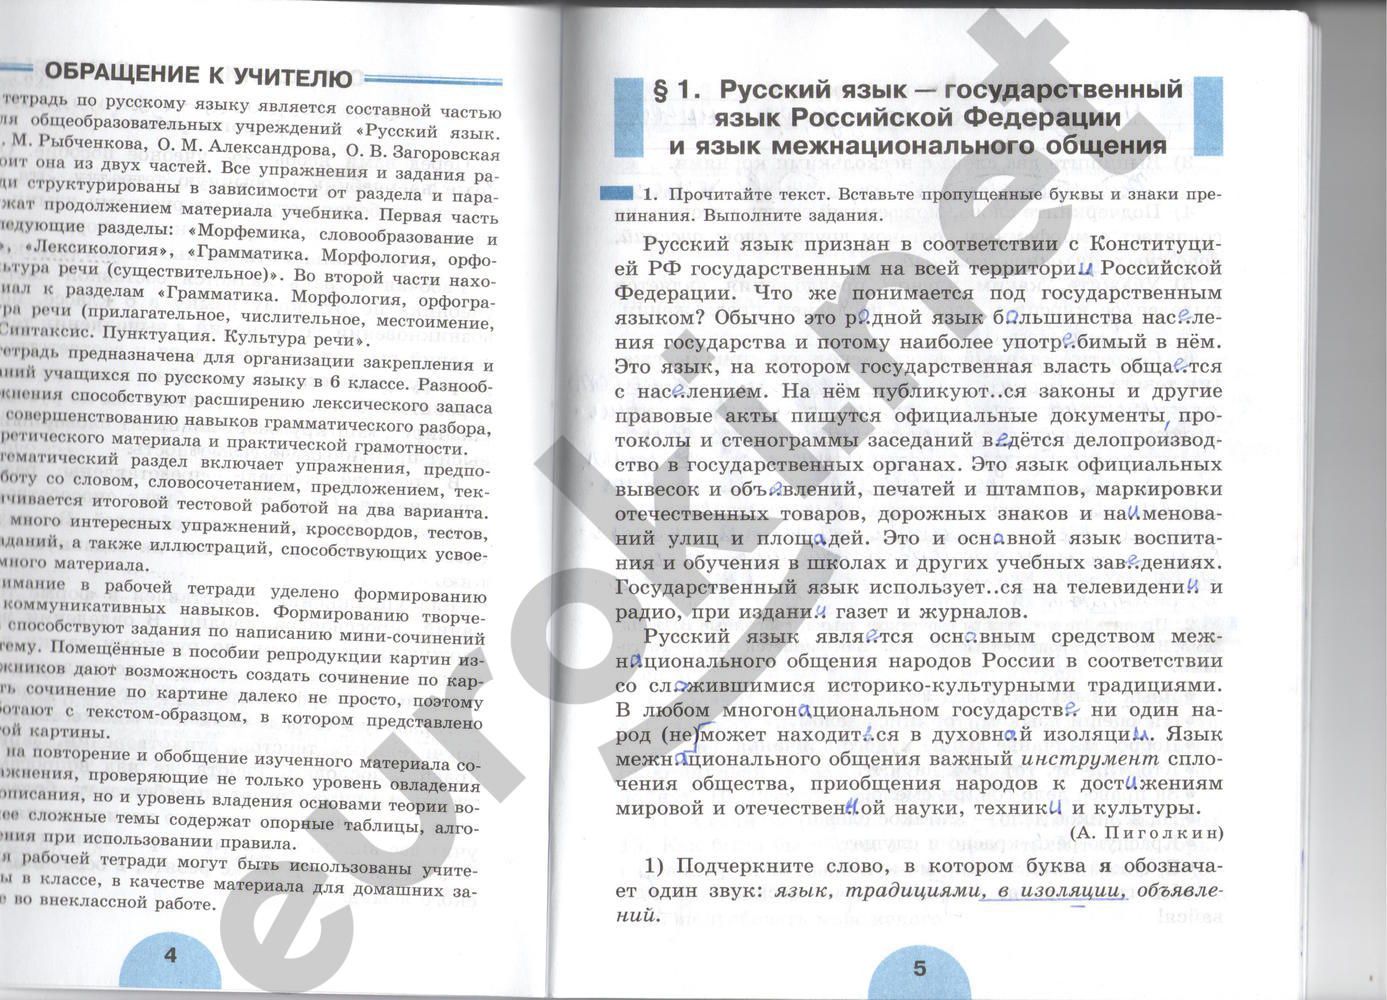 ГДЗ Русский язык 6 класс - стр. 4-5